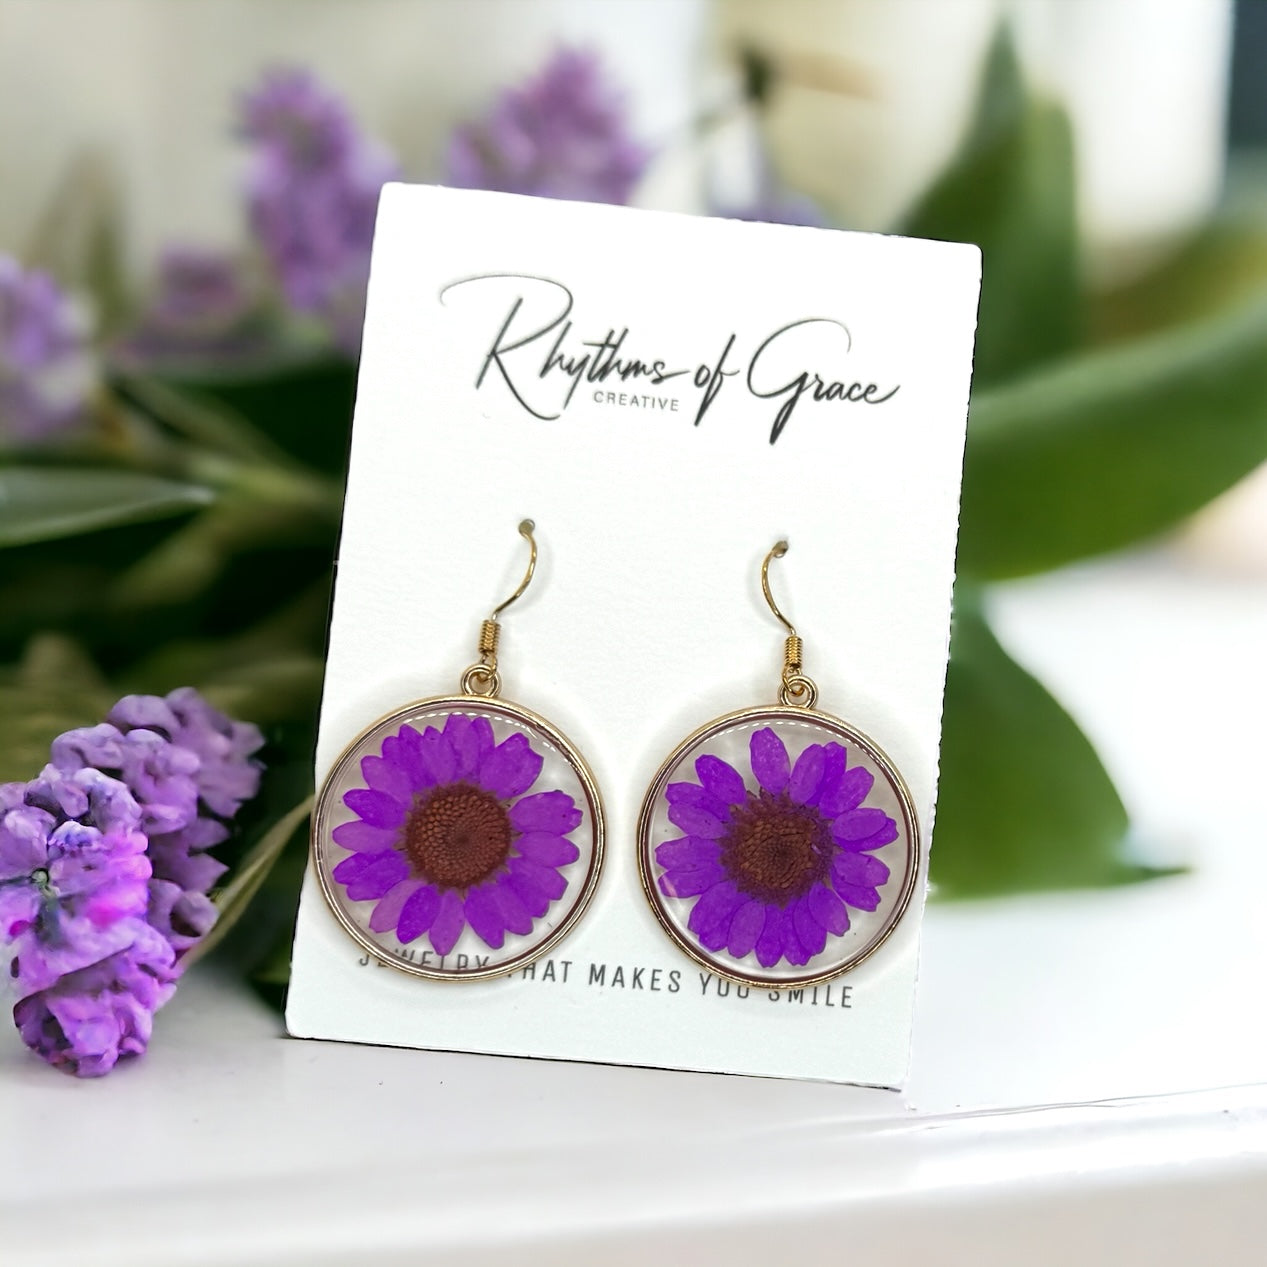 Dried Flower Earrings - Purple Flower, Dried Flowers, Easter Earrings, Handmade Earrings, Flower Earrings, Dried Flower Jewelry, Floral Accessories